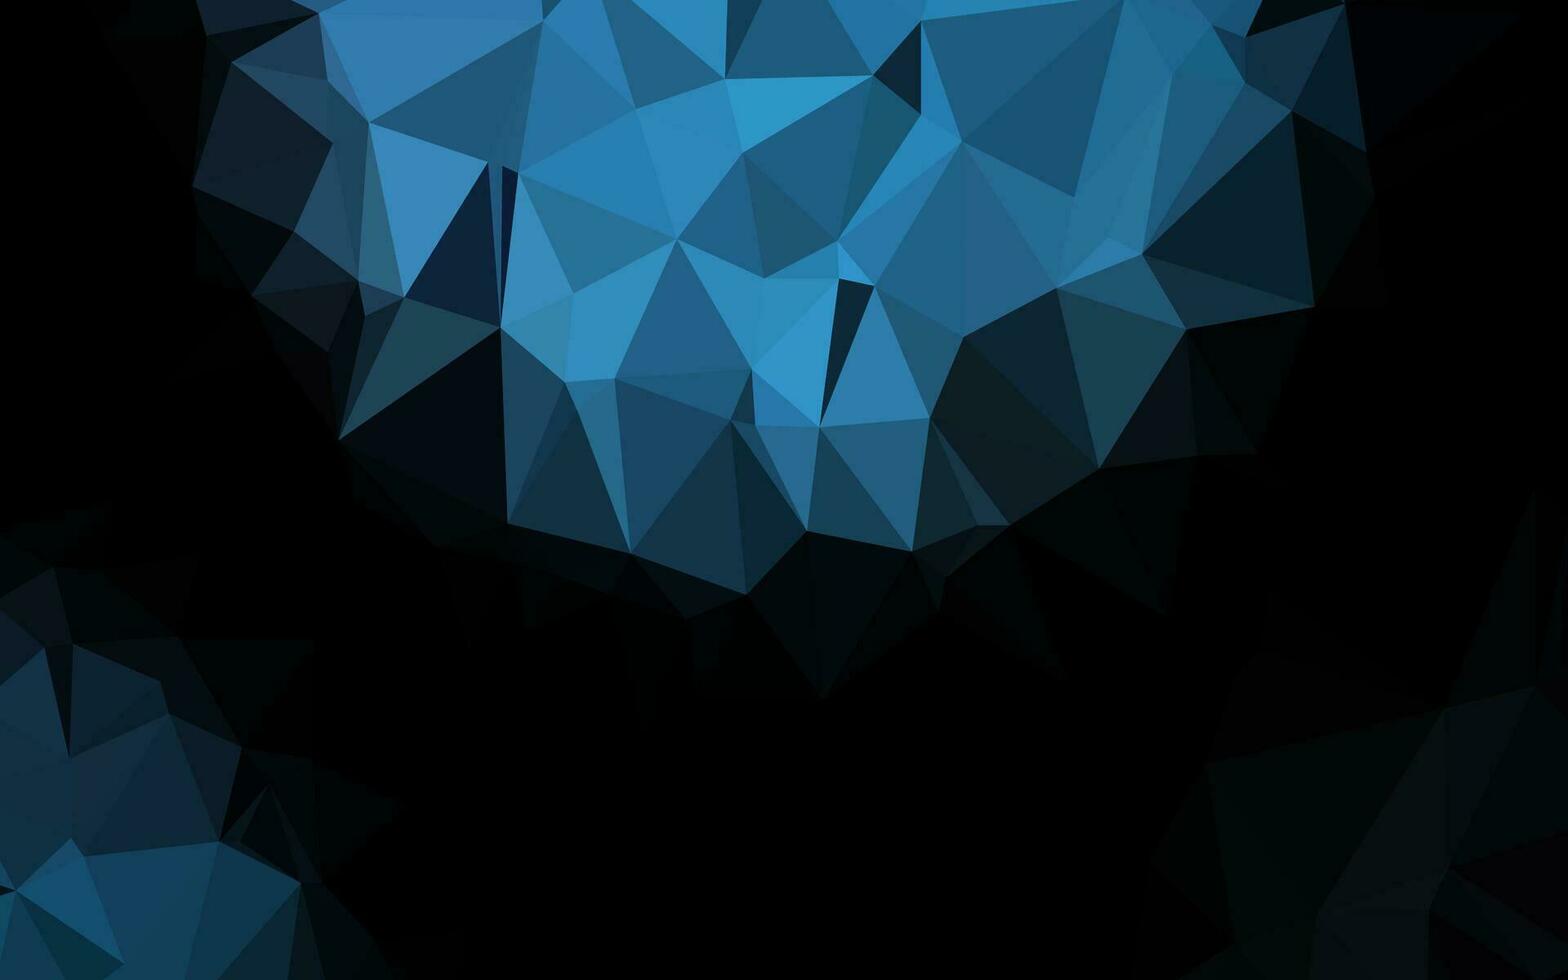 modelo poligonal de vetor azul escuro.